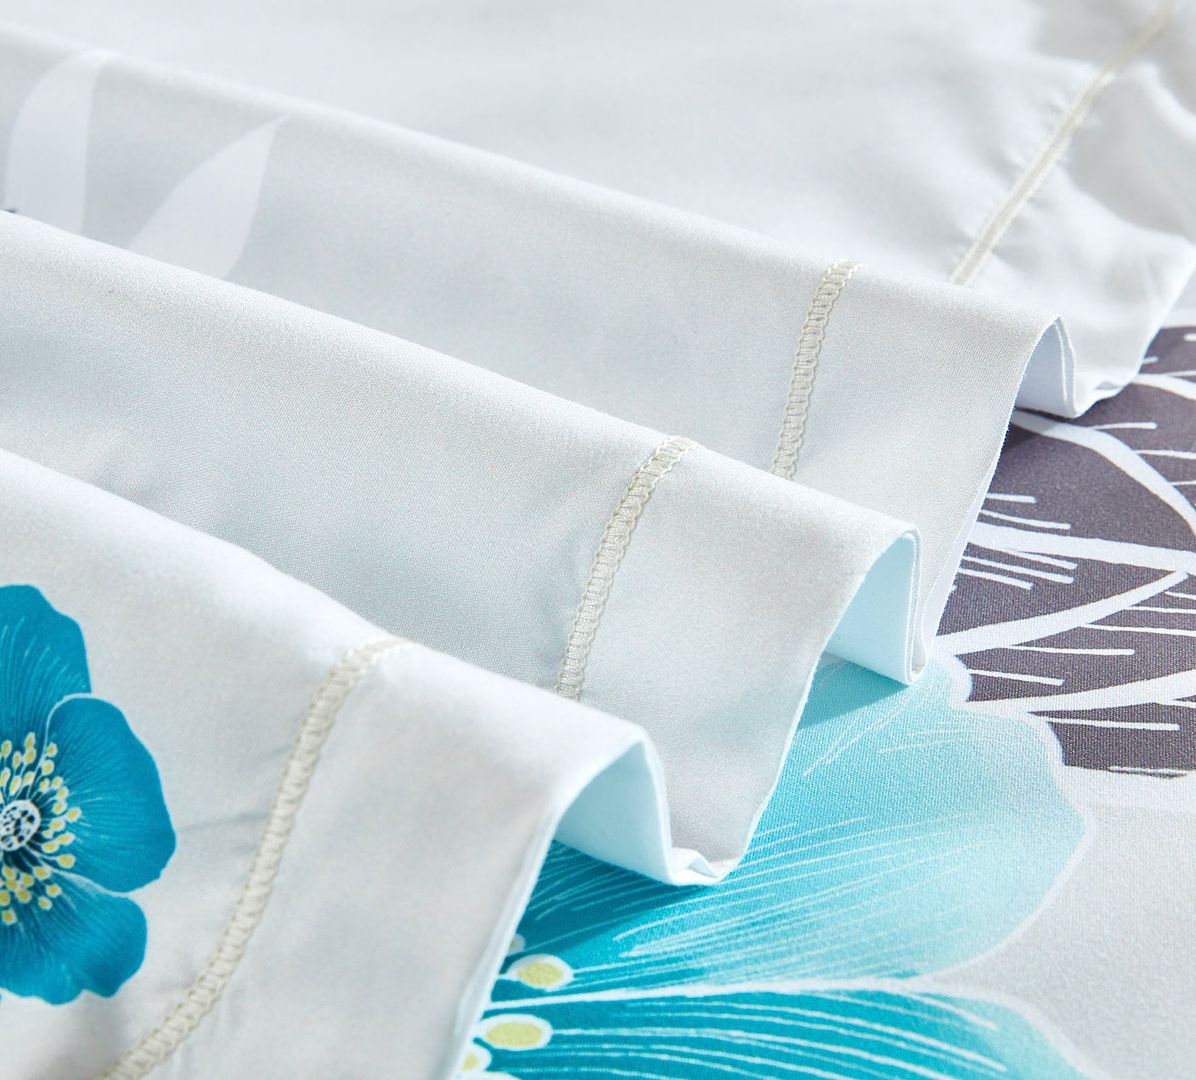 Braithe Floral Quilt Cover Set - King Size